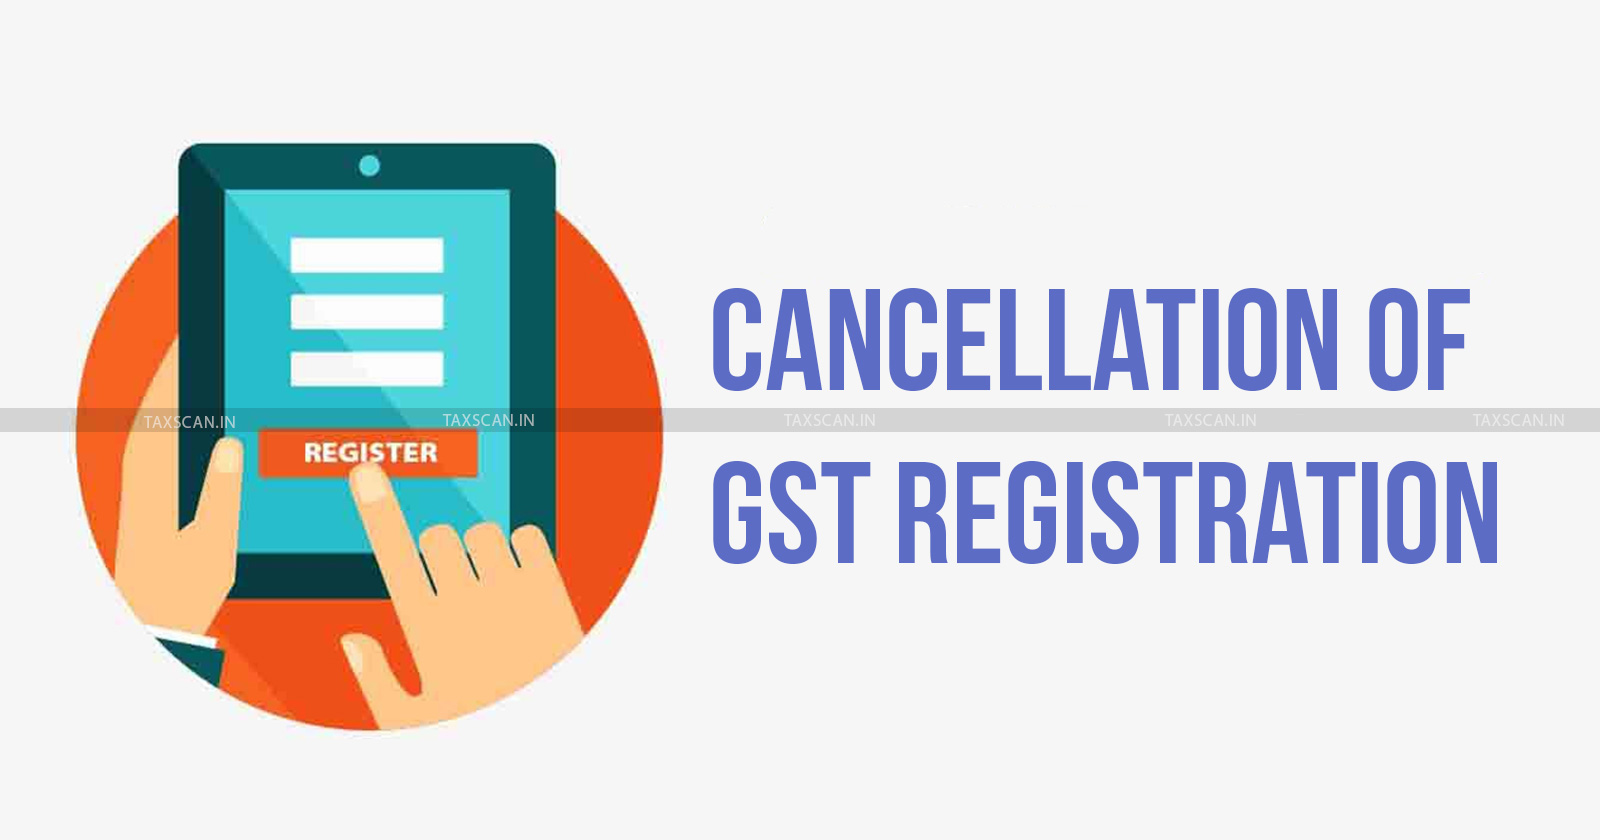 GST Registration - GST Registration cancellation - Delhi High Court - GST returns - GST - taxscan